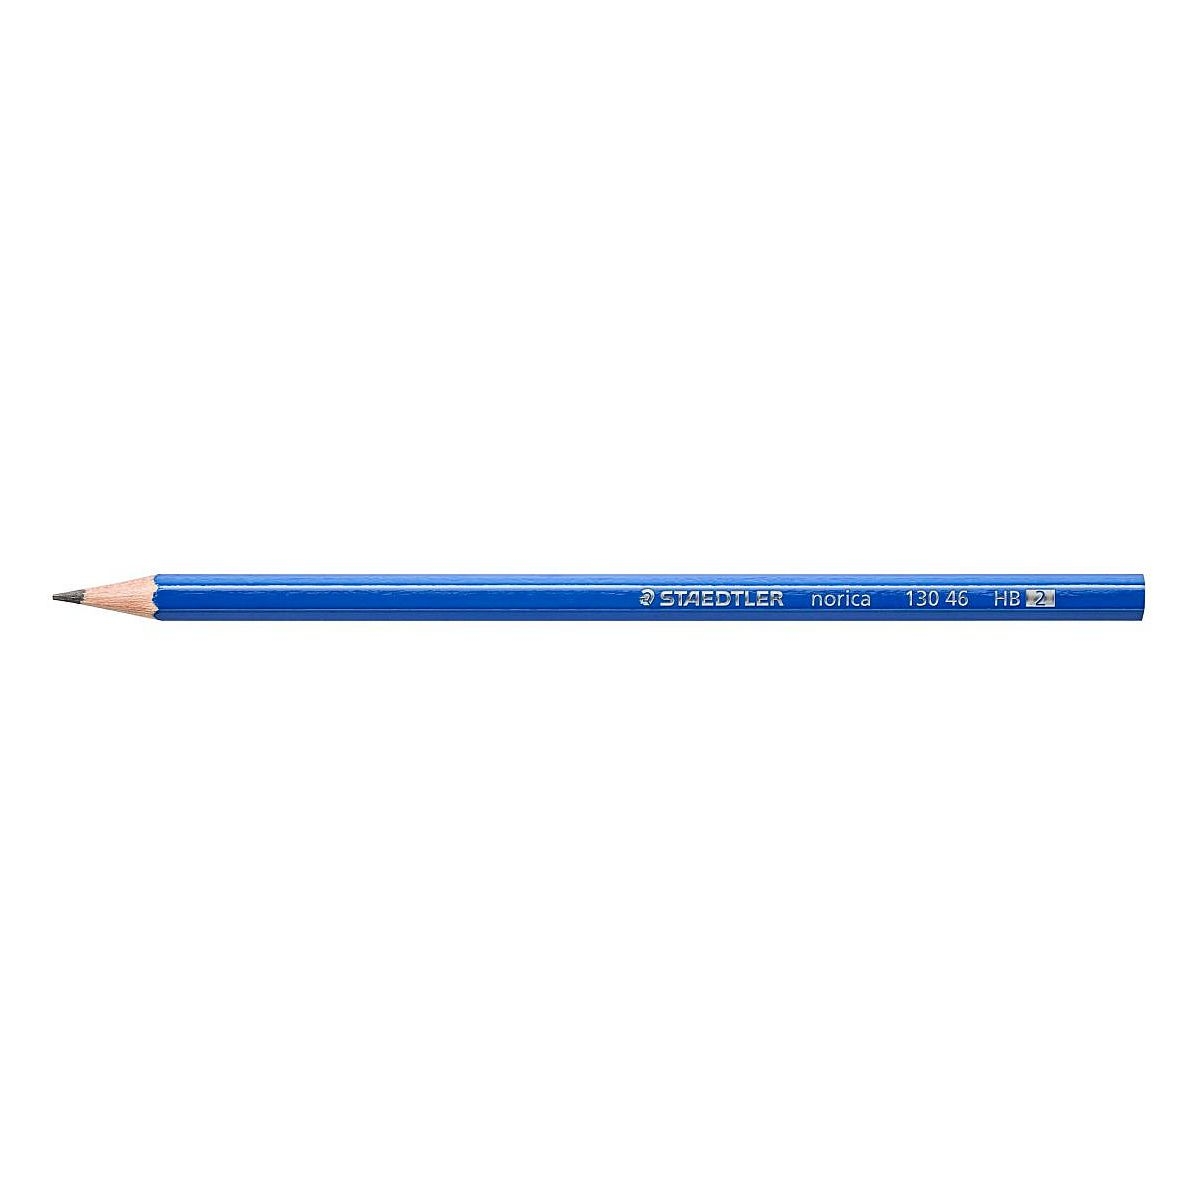 Ołówek Staedtler Norica HB (S 130 46-HB)